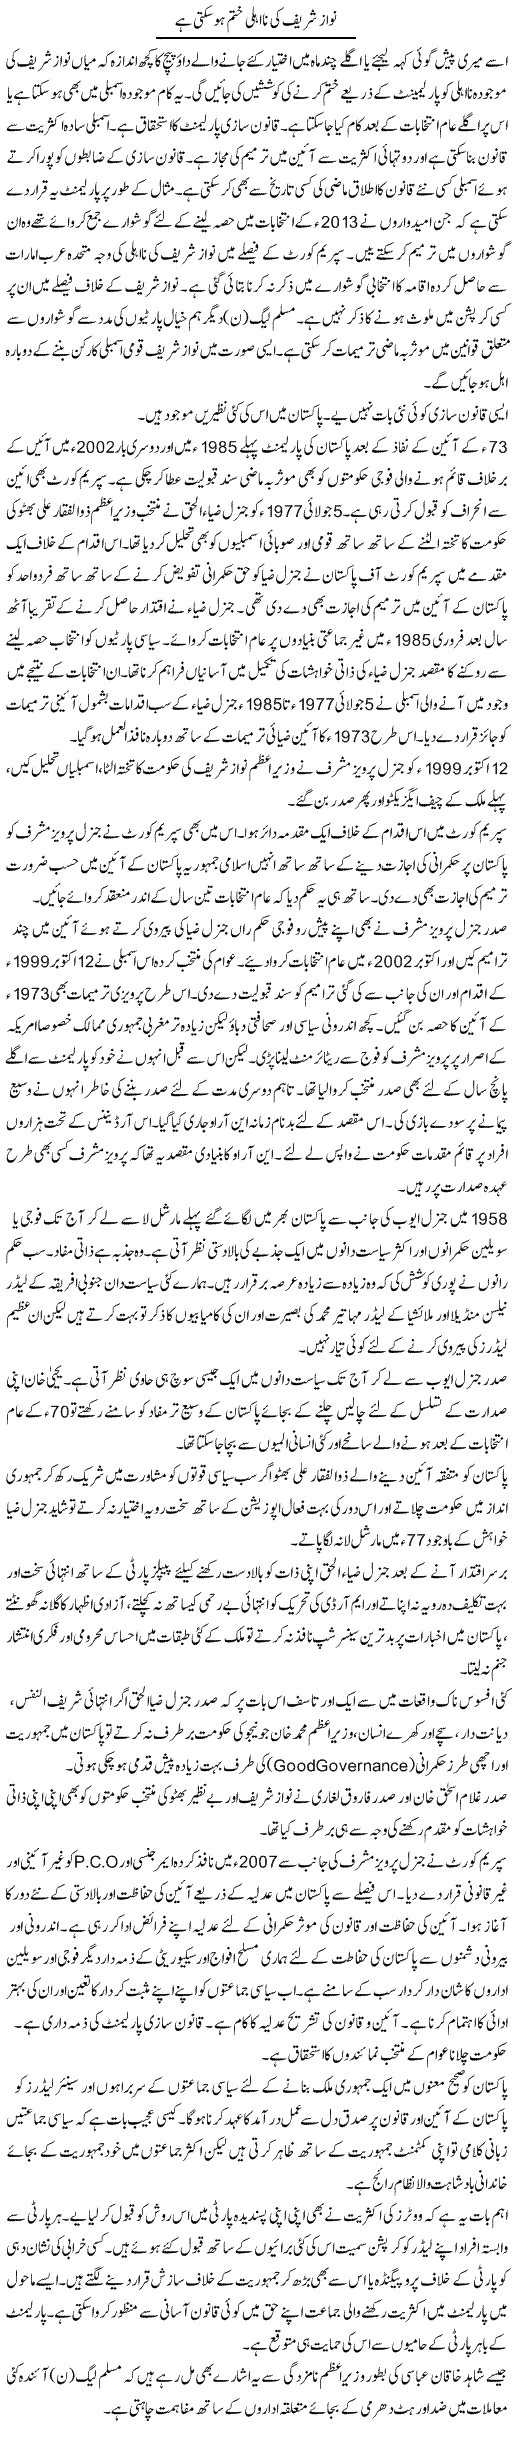 Nawaz Sharif Ki Na-Ahli Khatam Ho Sakti Hai | Dr. Waqar Yousuf Azeemi | Daily Urdu Columns